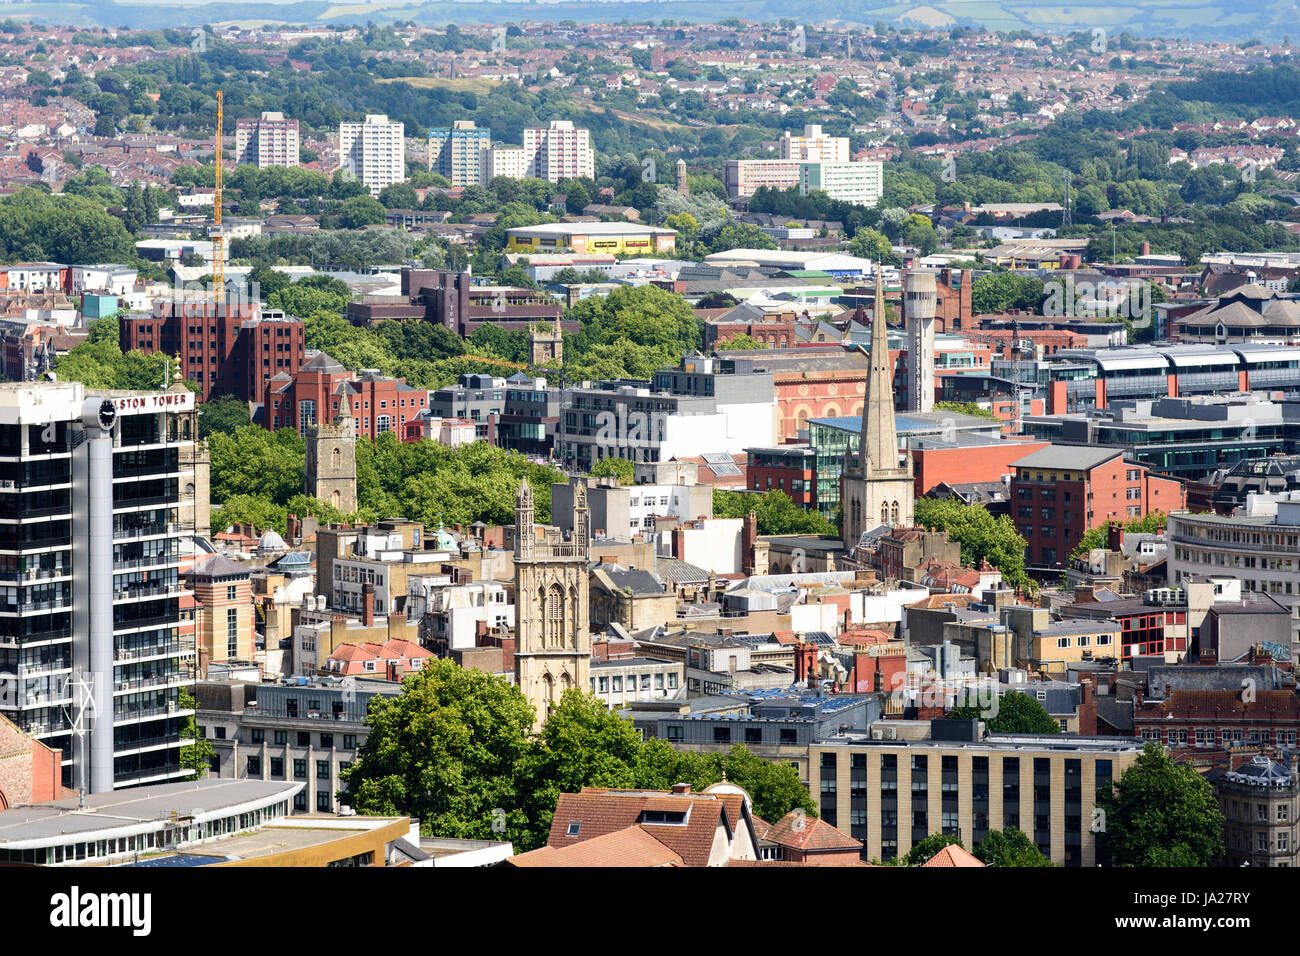 Bristol, Angleterre - le 17 juillet 2016 : le paysage urbain du centre et centre-ville de Bristol, y compris des immeubles de bureaux, des tours d'église et du conseil estate tower blo Banque D'Images